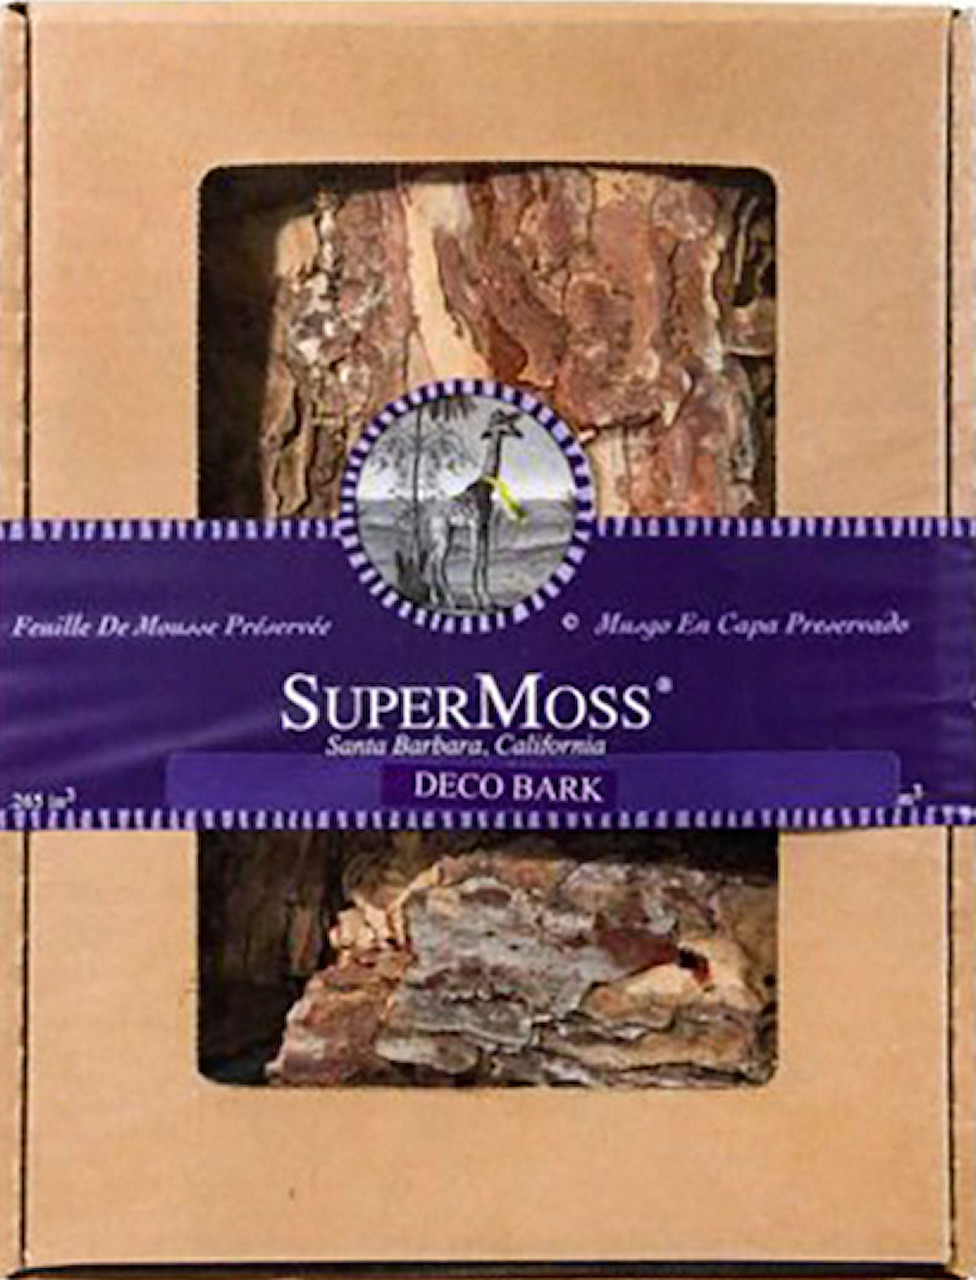 Super Moss Deco Bark Display Box 24 oz